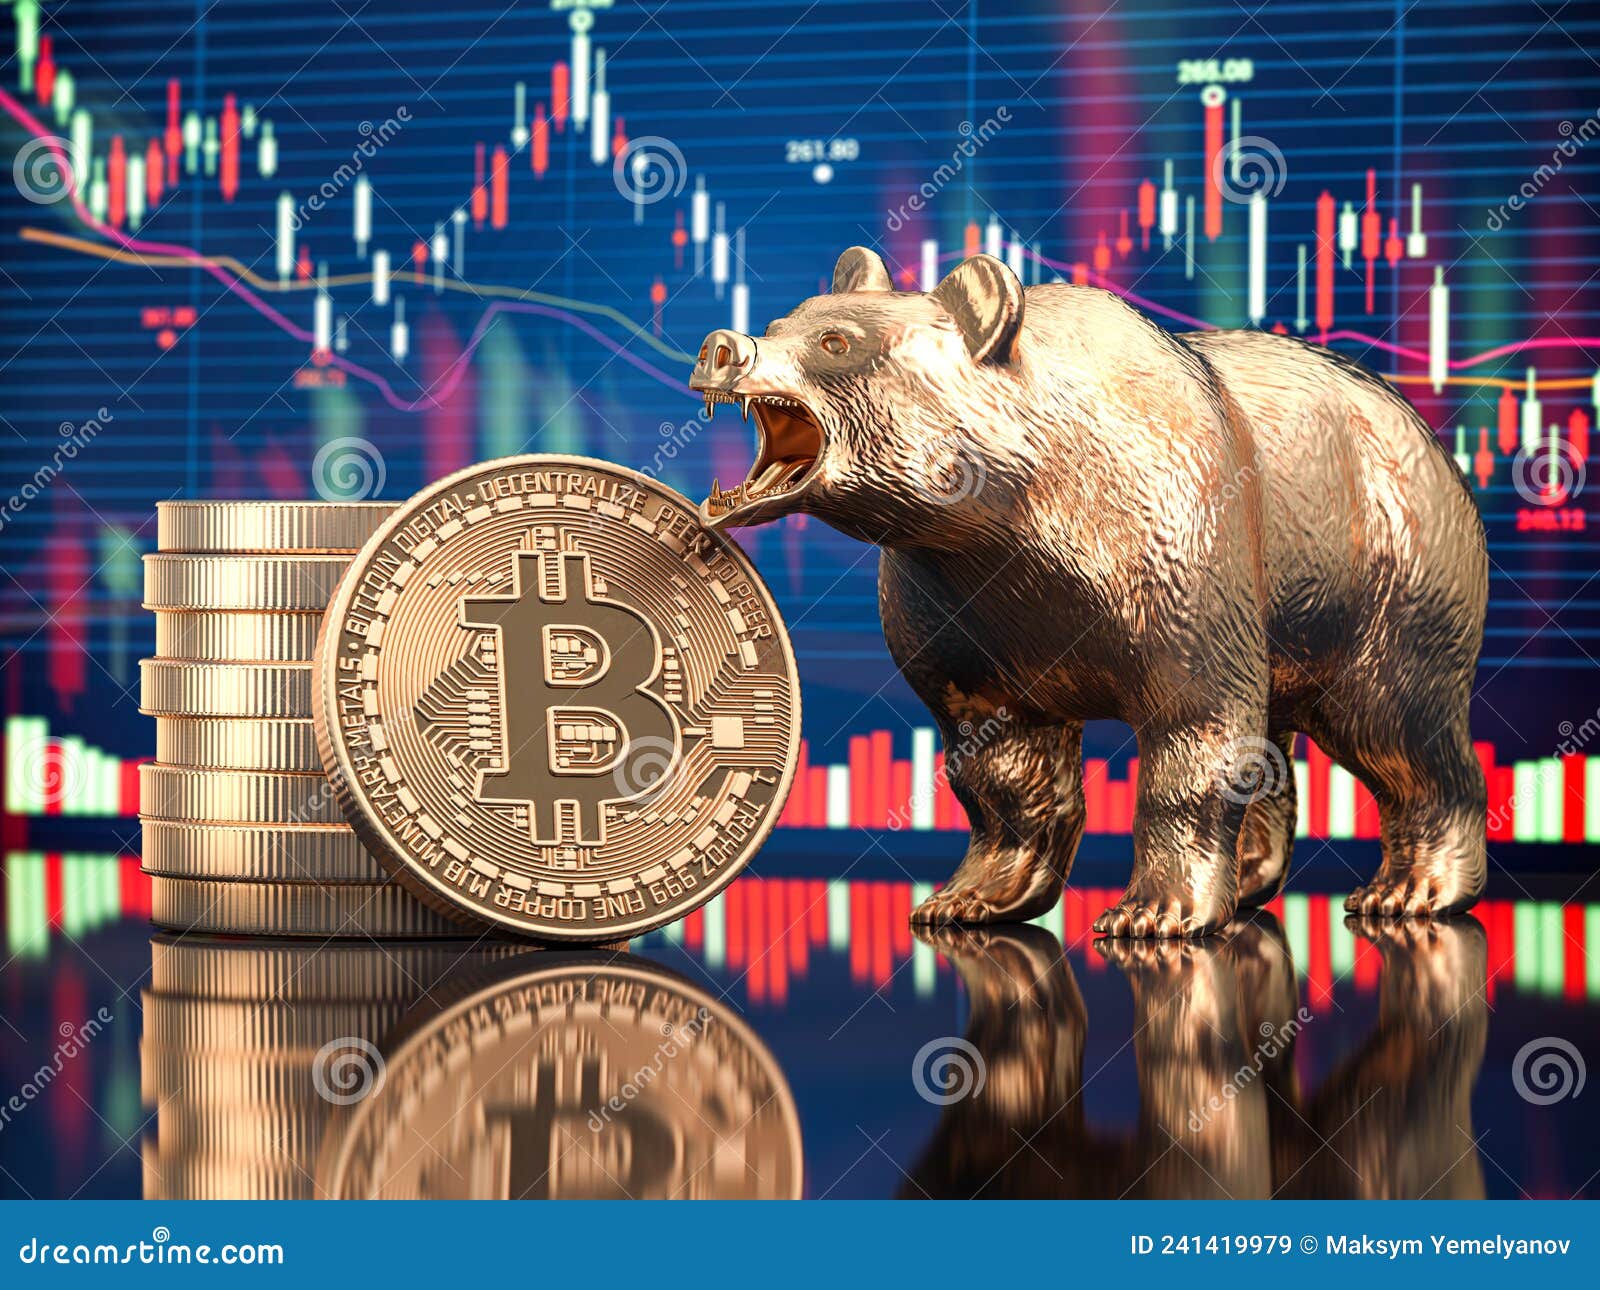 bitcoin coin with bear and stock chart. bearish market crash of btc